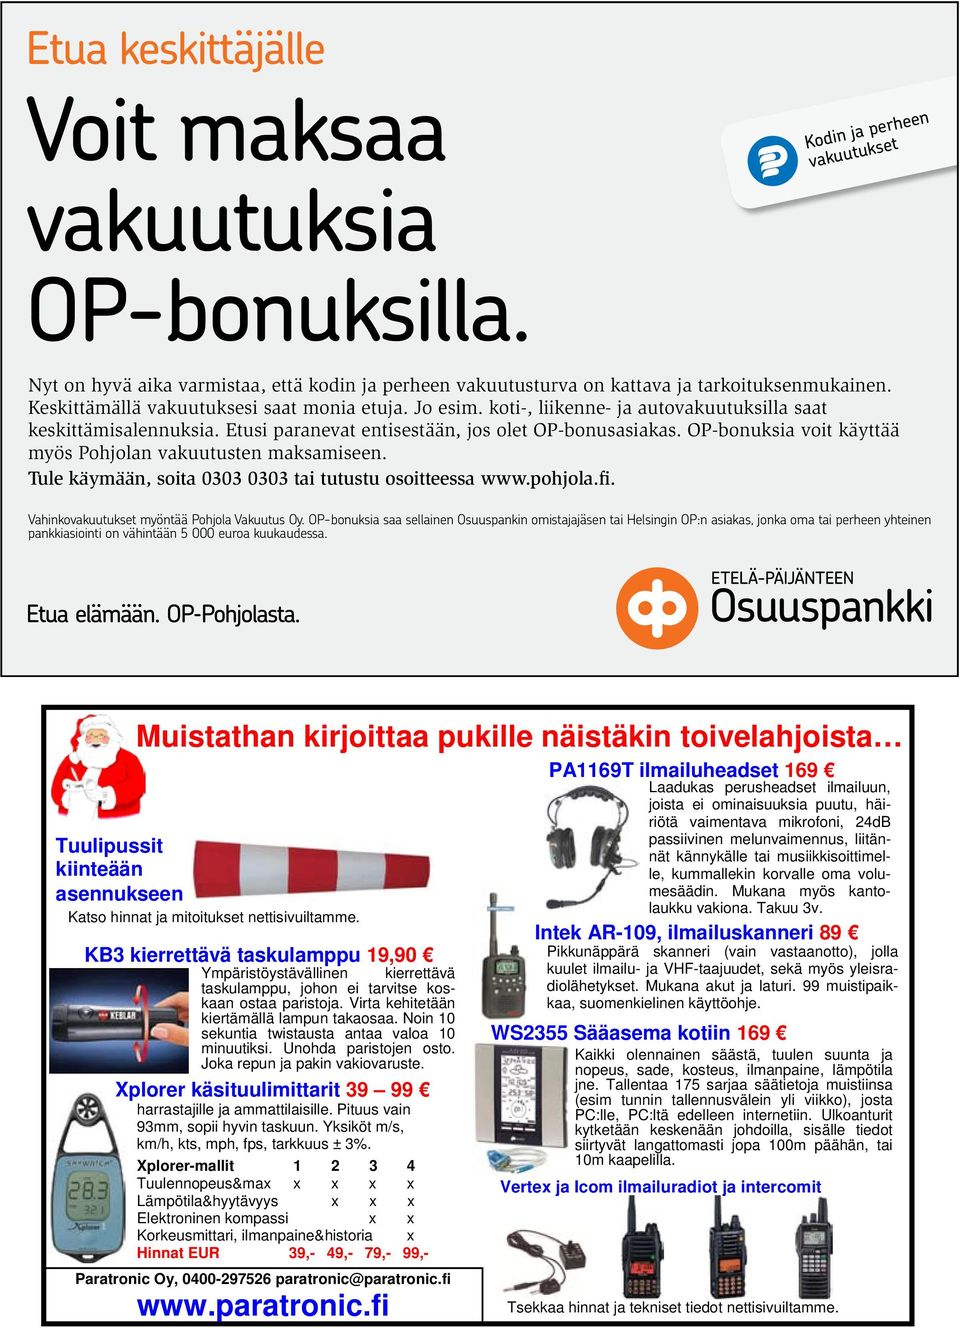 OP-bonuksia voit käyttää myös Pohjolan vakuutusten maksamiseen. Tule käymään, soita 0303 0303 tai tutustu osoitteessa www.pohjola.fi. Vahinkovakuutukset myöntää Pohjola Vakuutus Oy.